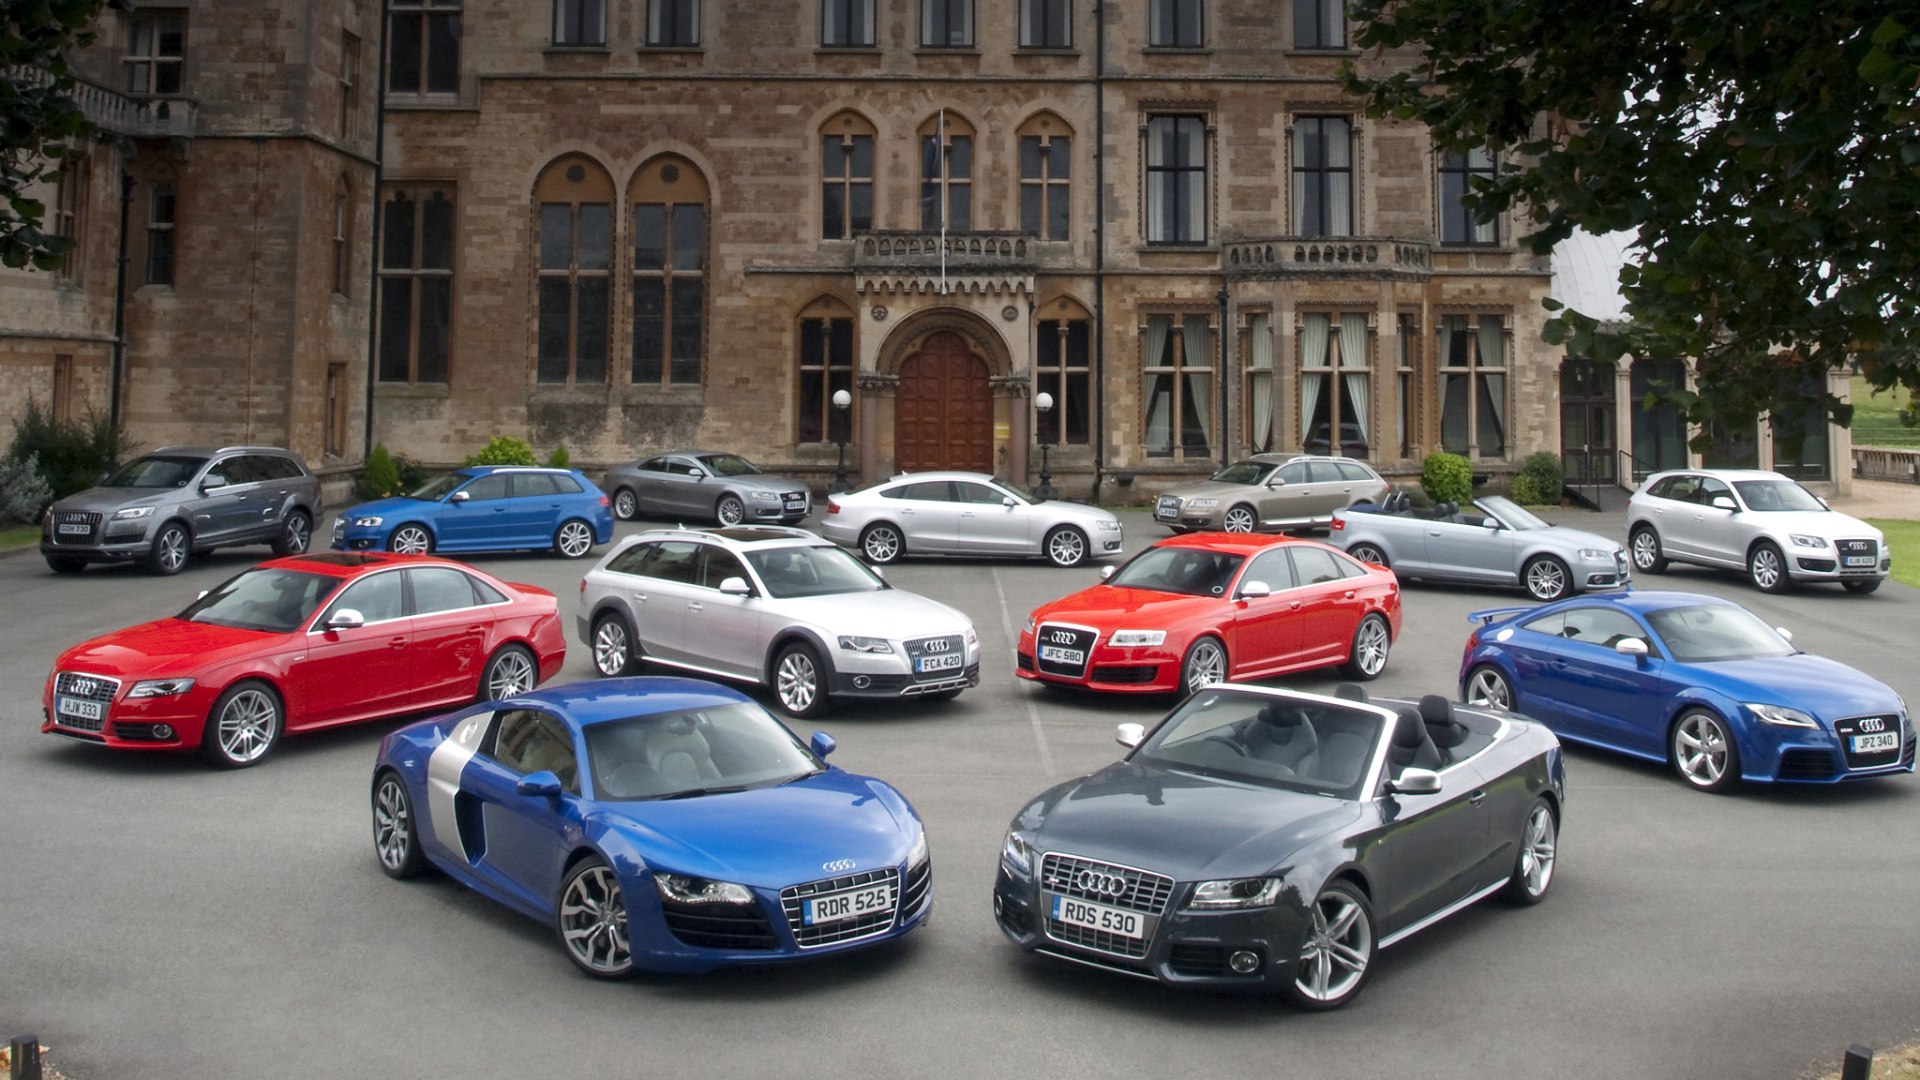 Автомобили Audi у старинного здания